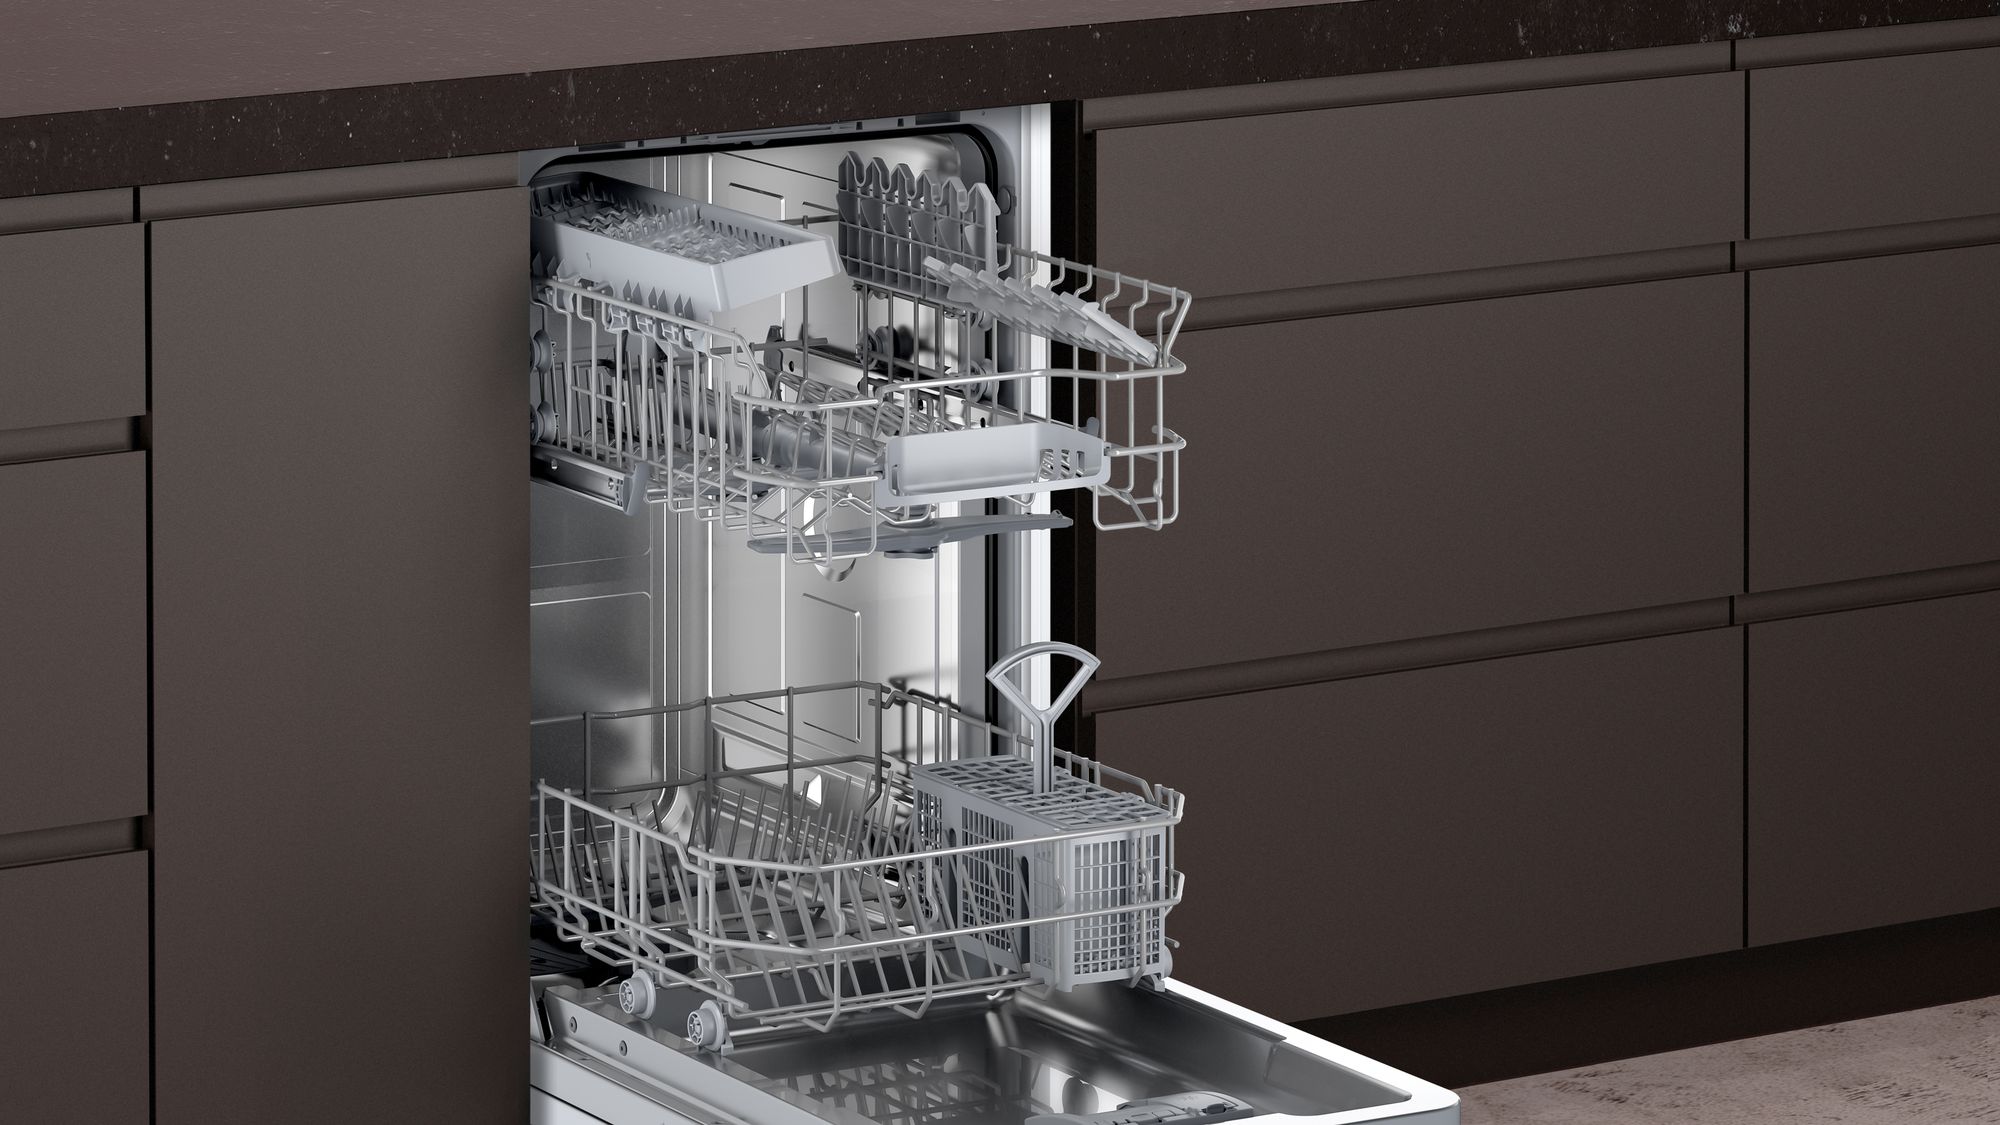 Встроенная посудомойка узкая. Neff s853hkx50r встраиваемая посудомоечная машина 45 см. Neff встраиваемая посудомоечная машина s953ikx50r. Встраиваемая посудомоечная машина Neff s857hmx80r. Посудомоечная машина Neff s855hmx50r.